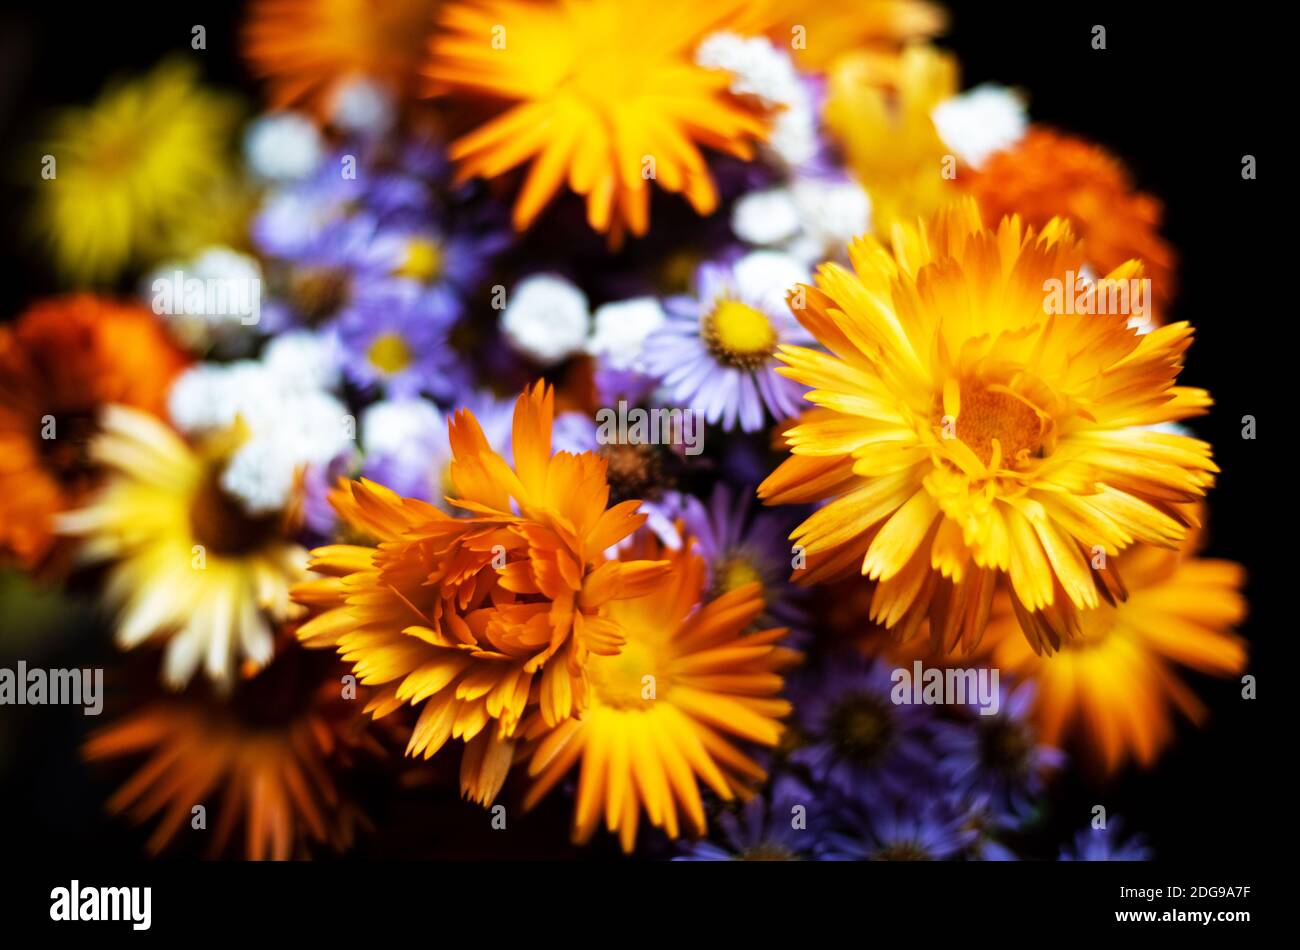 Bouquet de color naranja brillante y lila flores silvestres contra un fondo oscuro Foto de stock